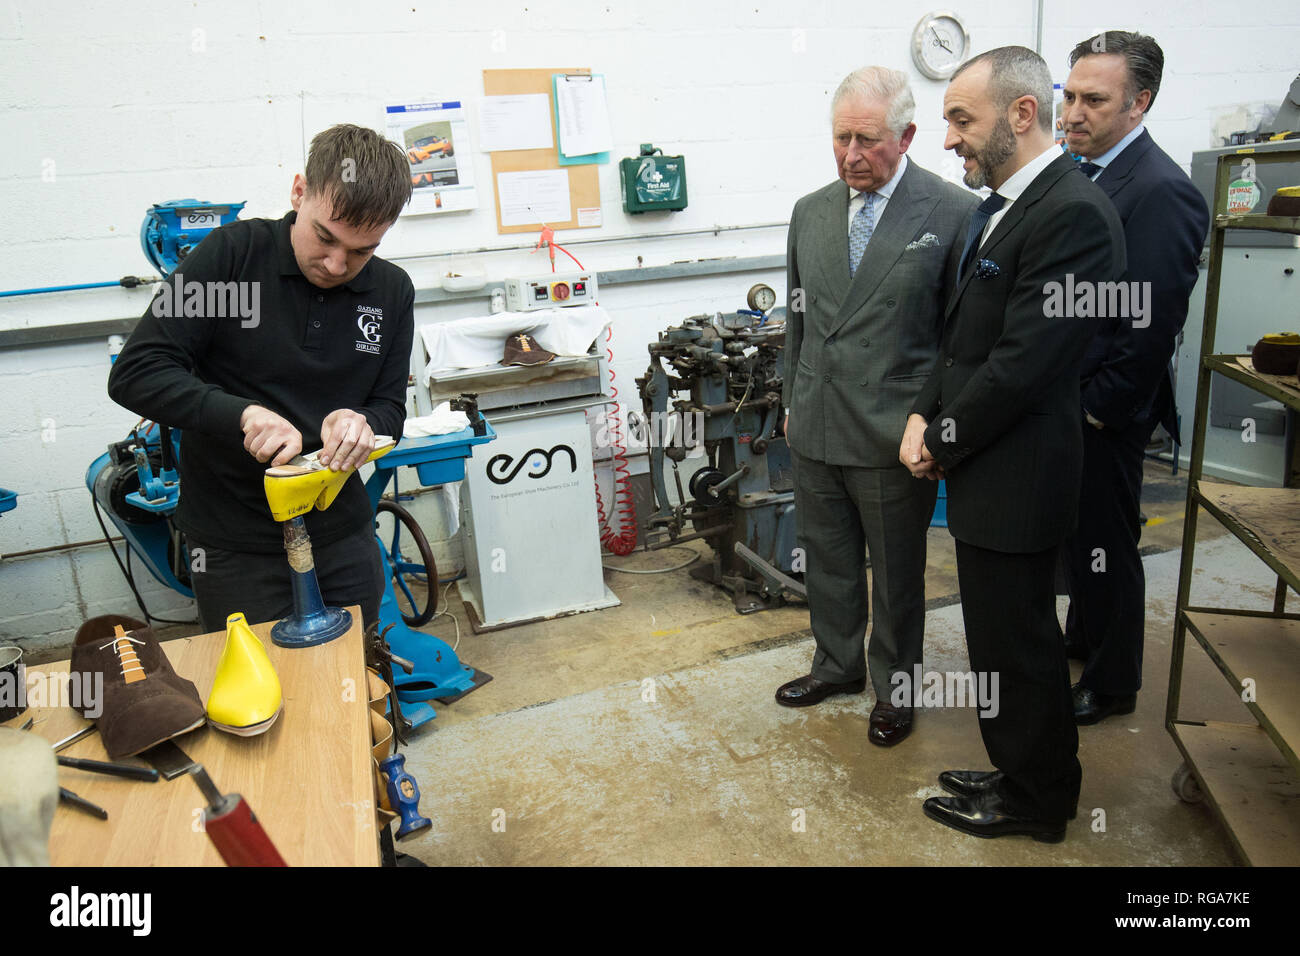 Der Prinz von Wales wird während einer Führung durch die Schaufabrik von Gaziano & Girling Ltd in Kettering den Prozess und die Schritte der Schuherstellung gezeigt. Stockfoto